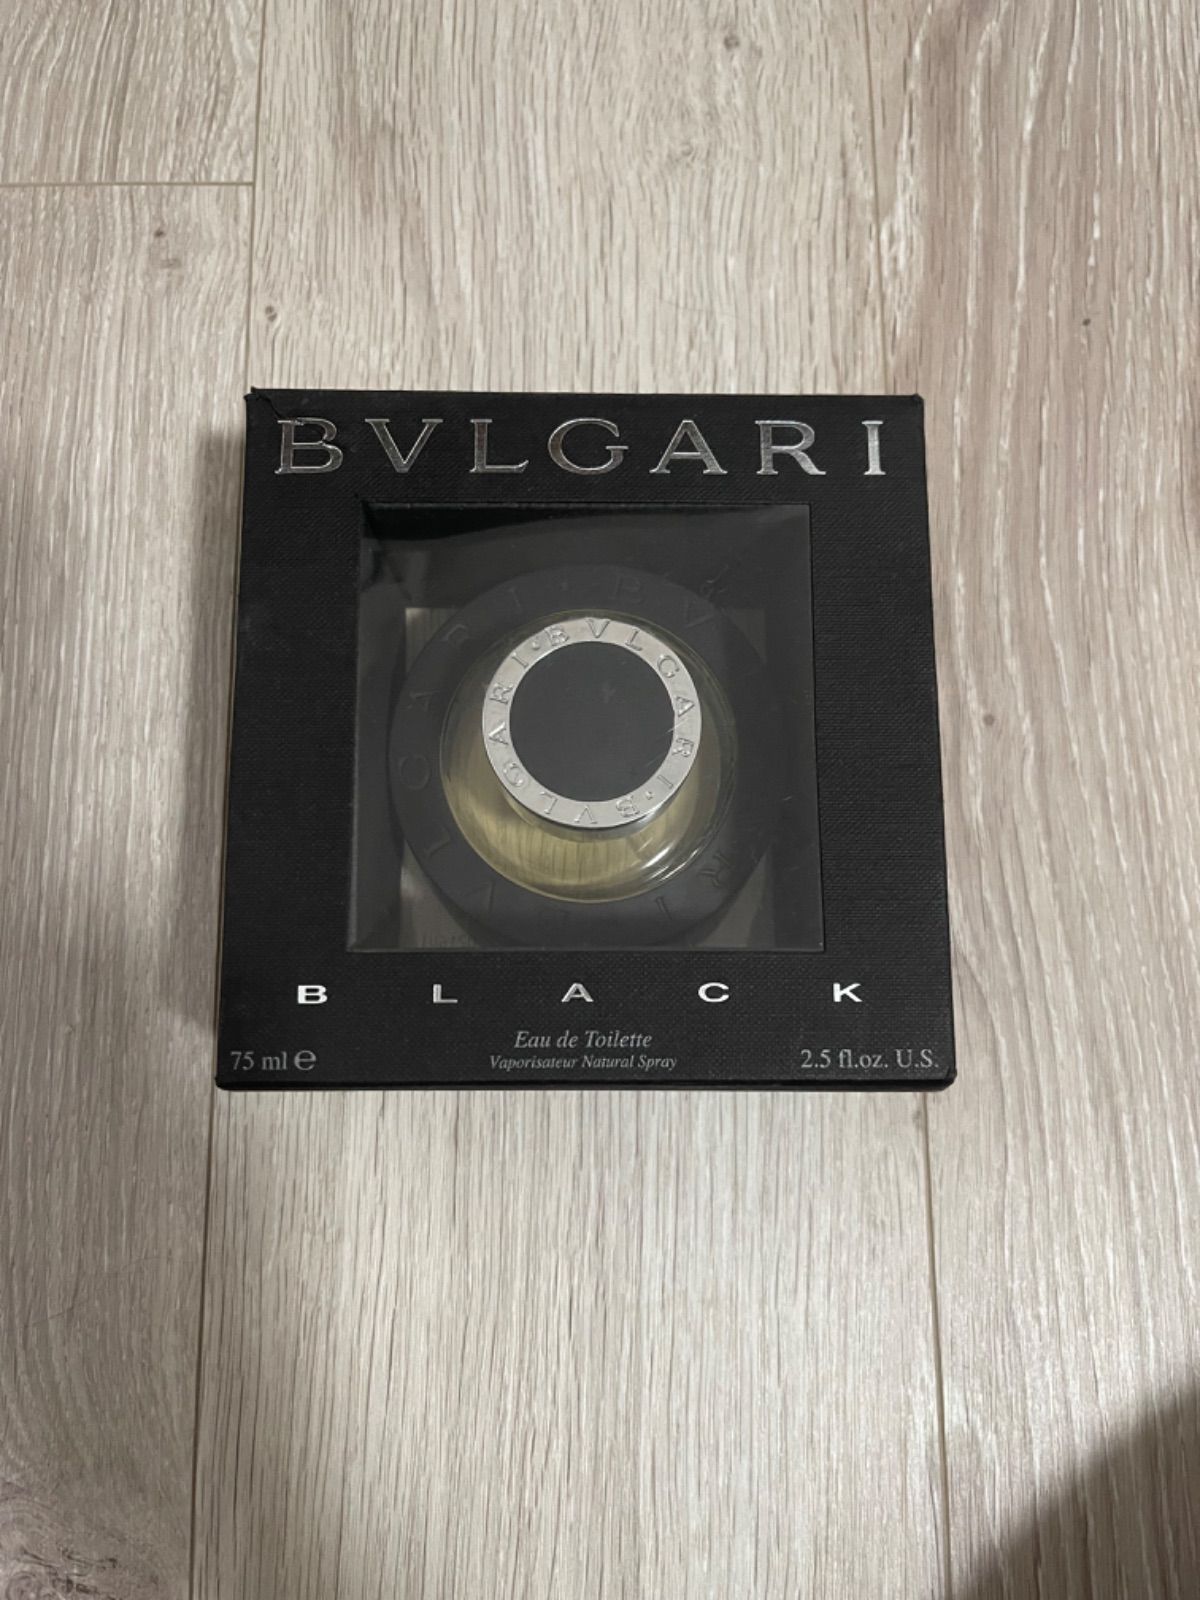 【お得特価】5304 ブルガリ BVLGARIブラック オードトワレ 75ml 香水(男性用)